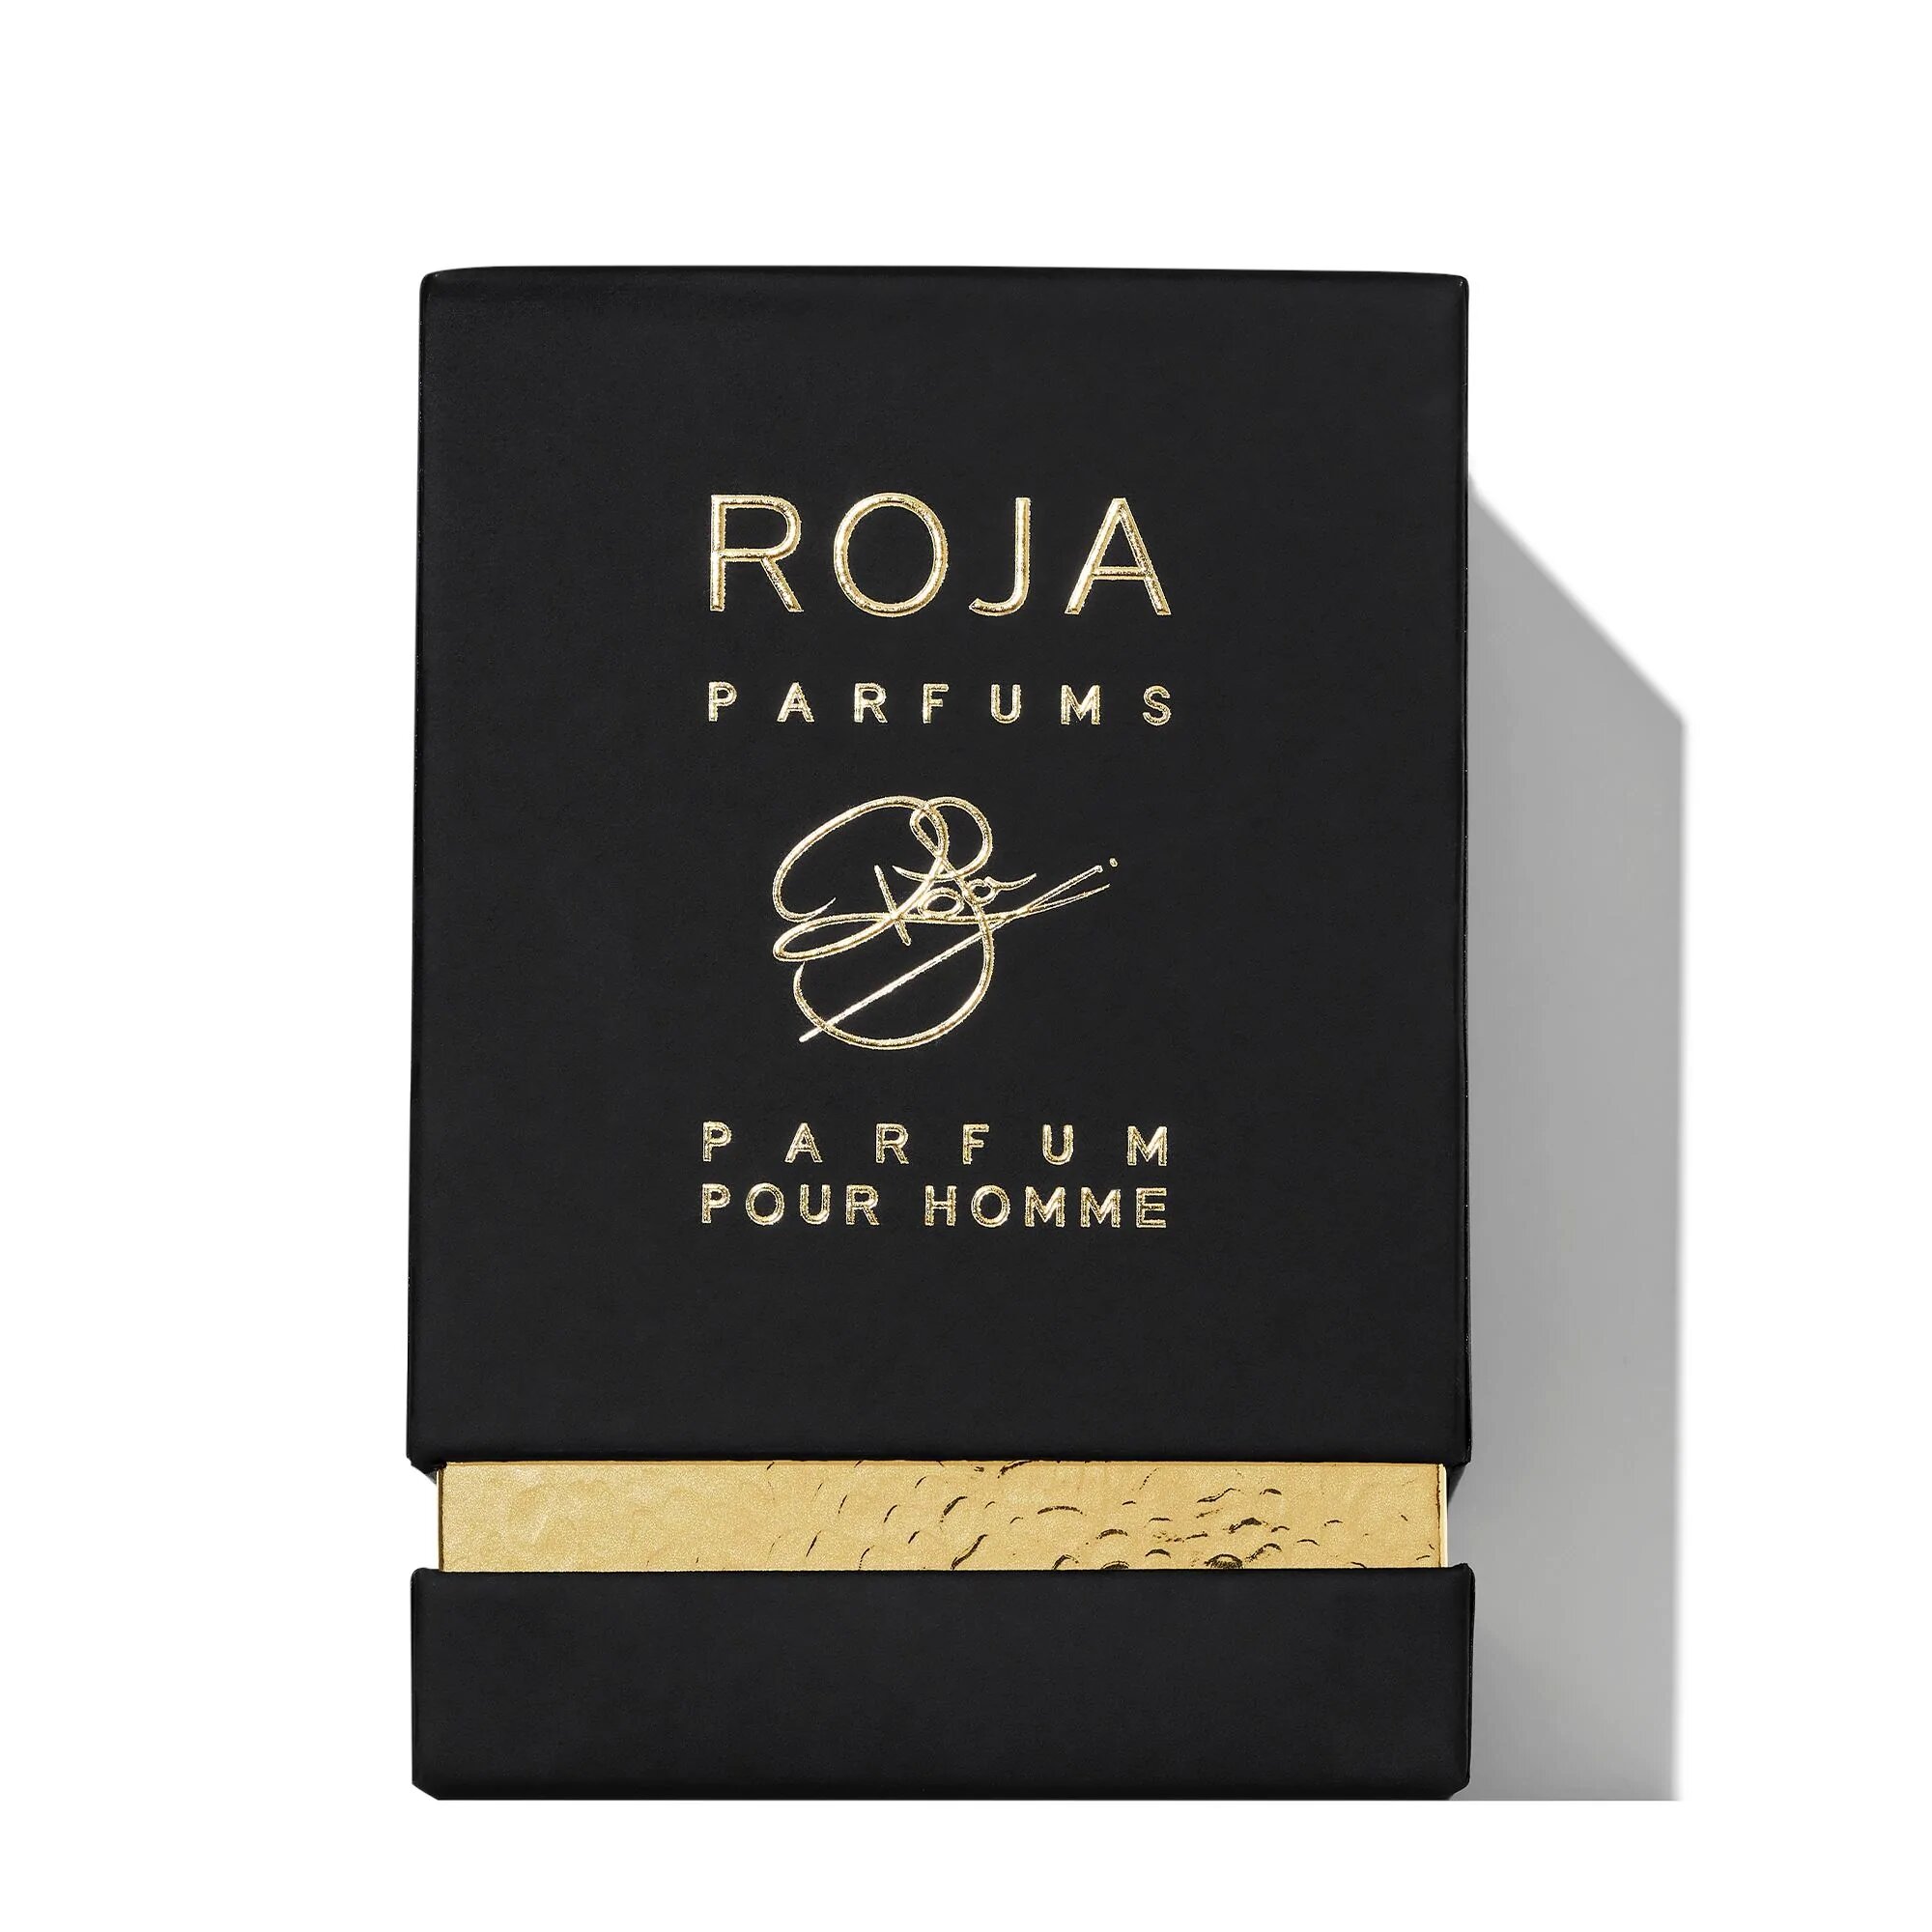 enigma-pour-homme-fragrance-roja-parfums-674406 (1)